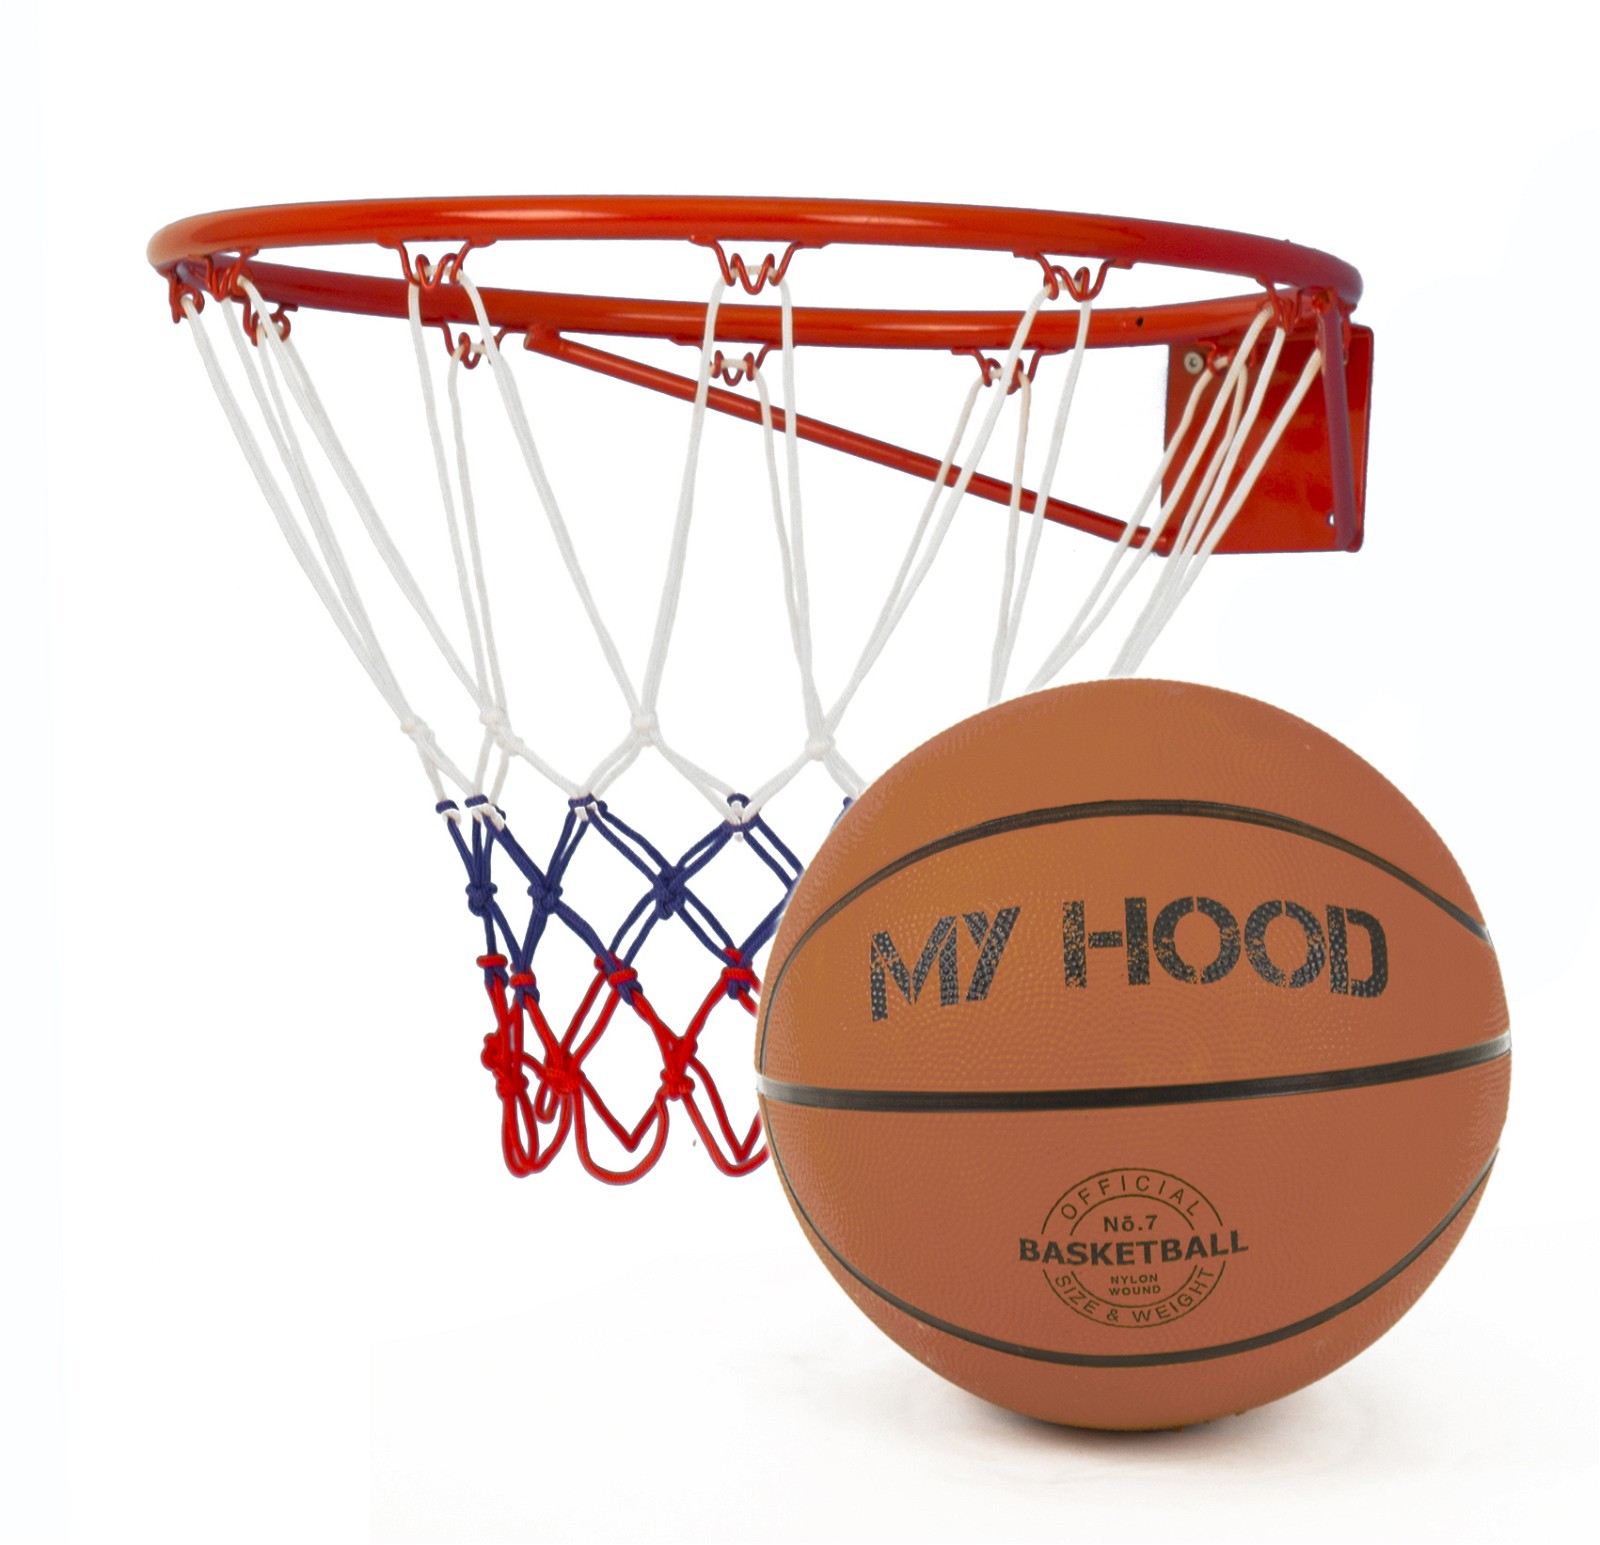 My Hood basketkurv m/bold Ø45 cm/bold str. 7